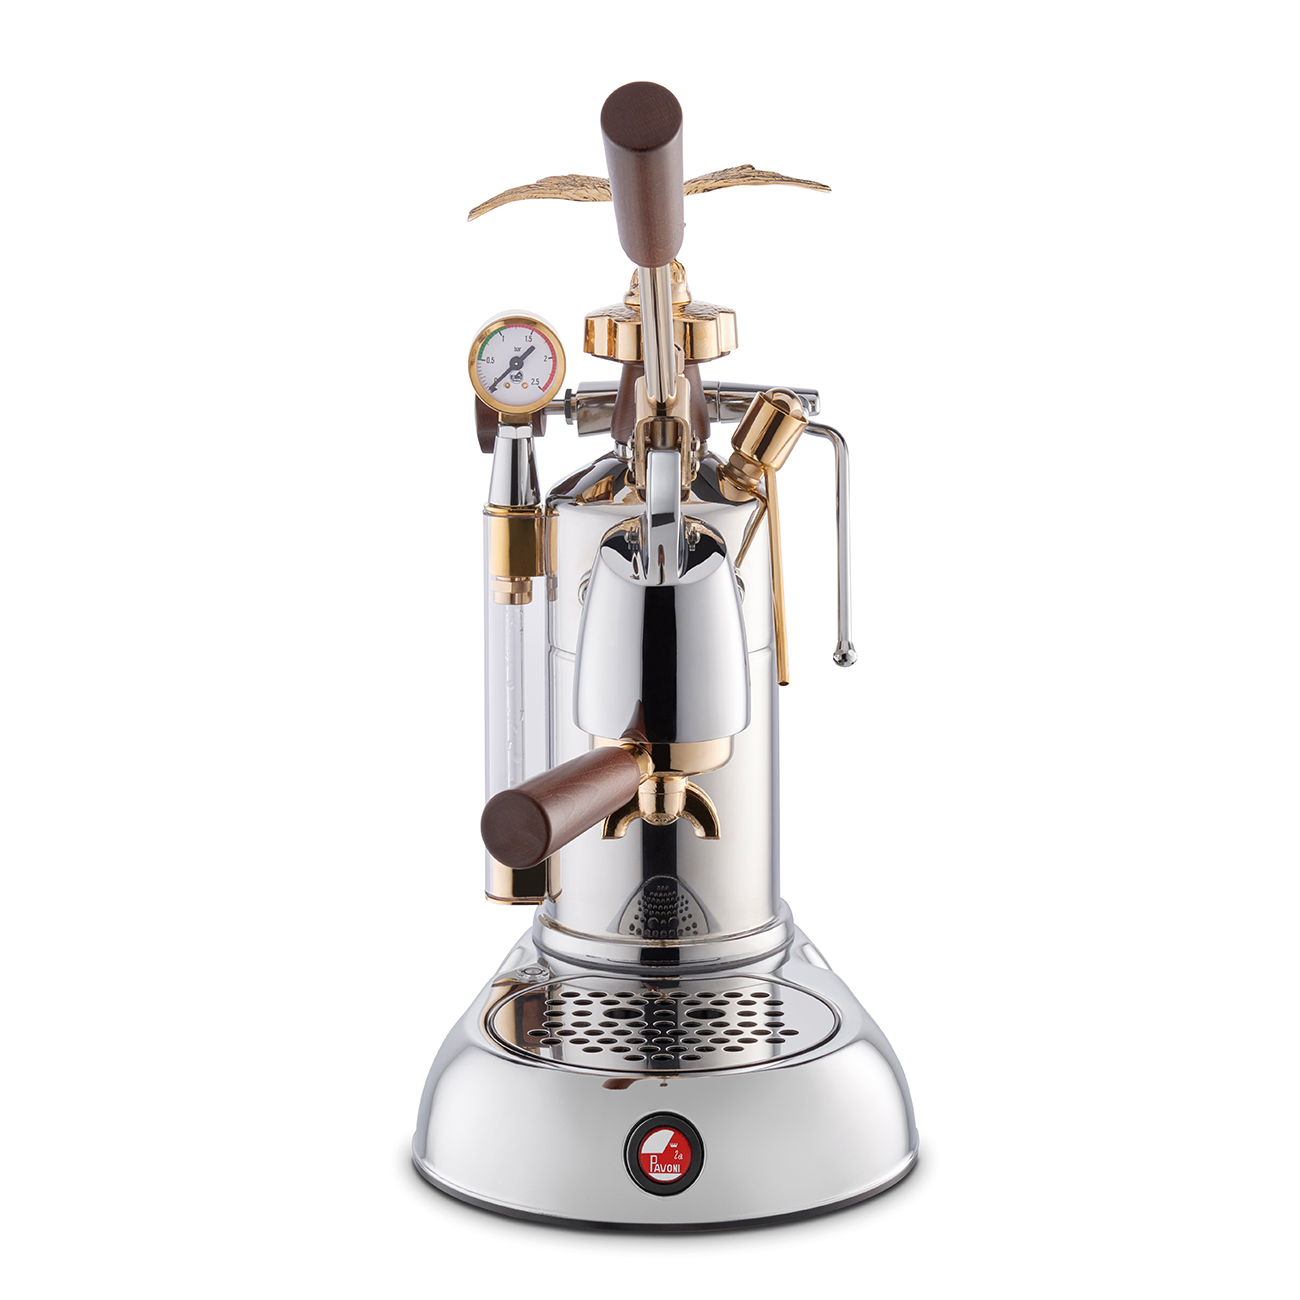 La Pavoni Expo 2015 espresso machine